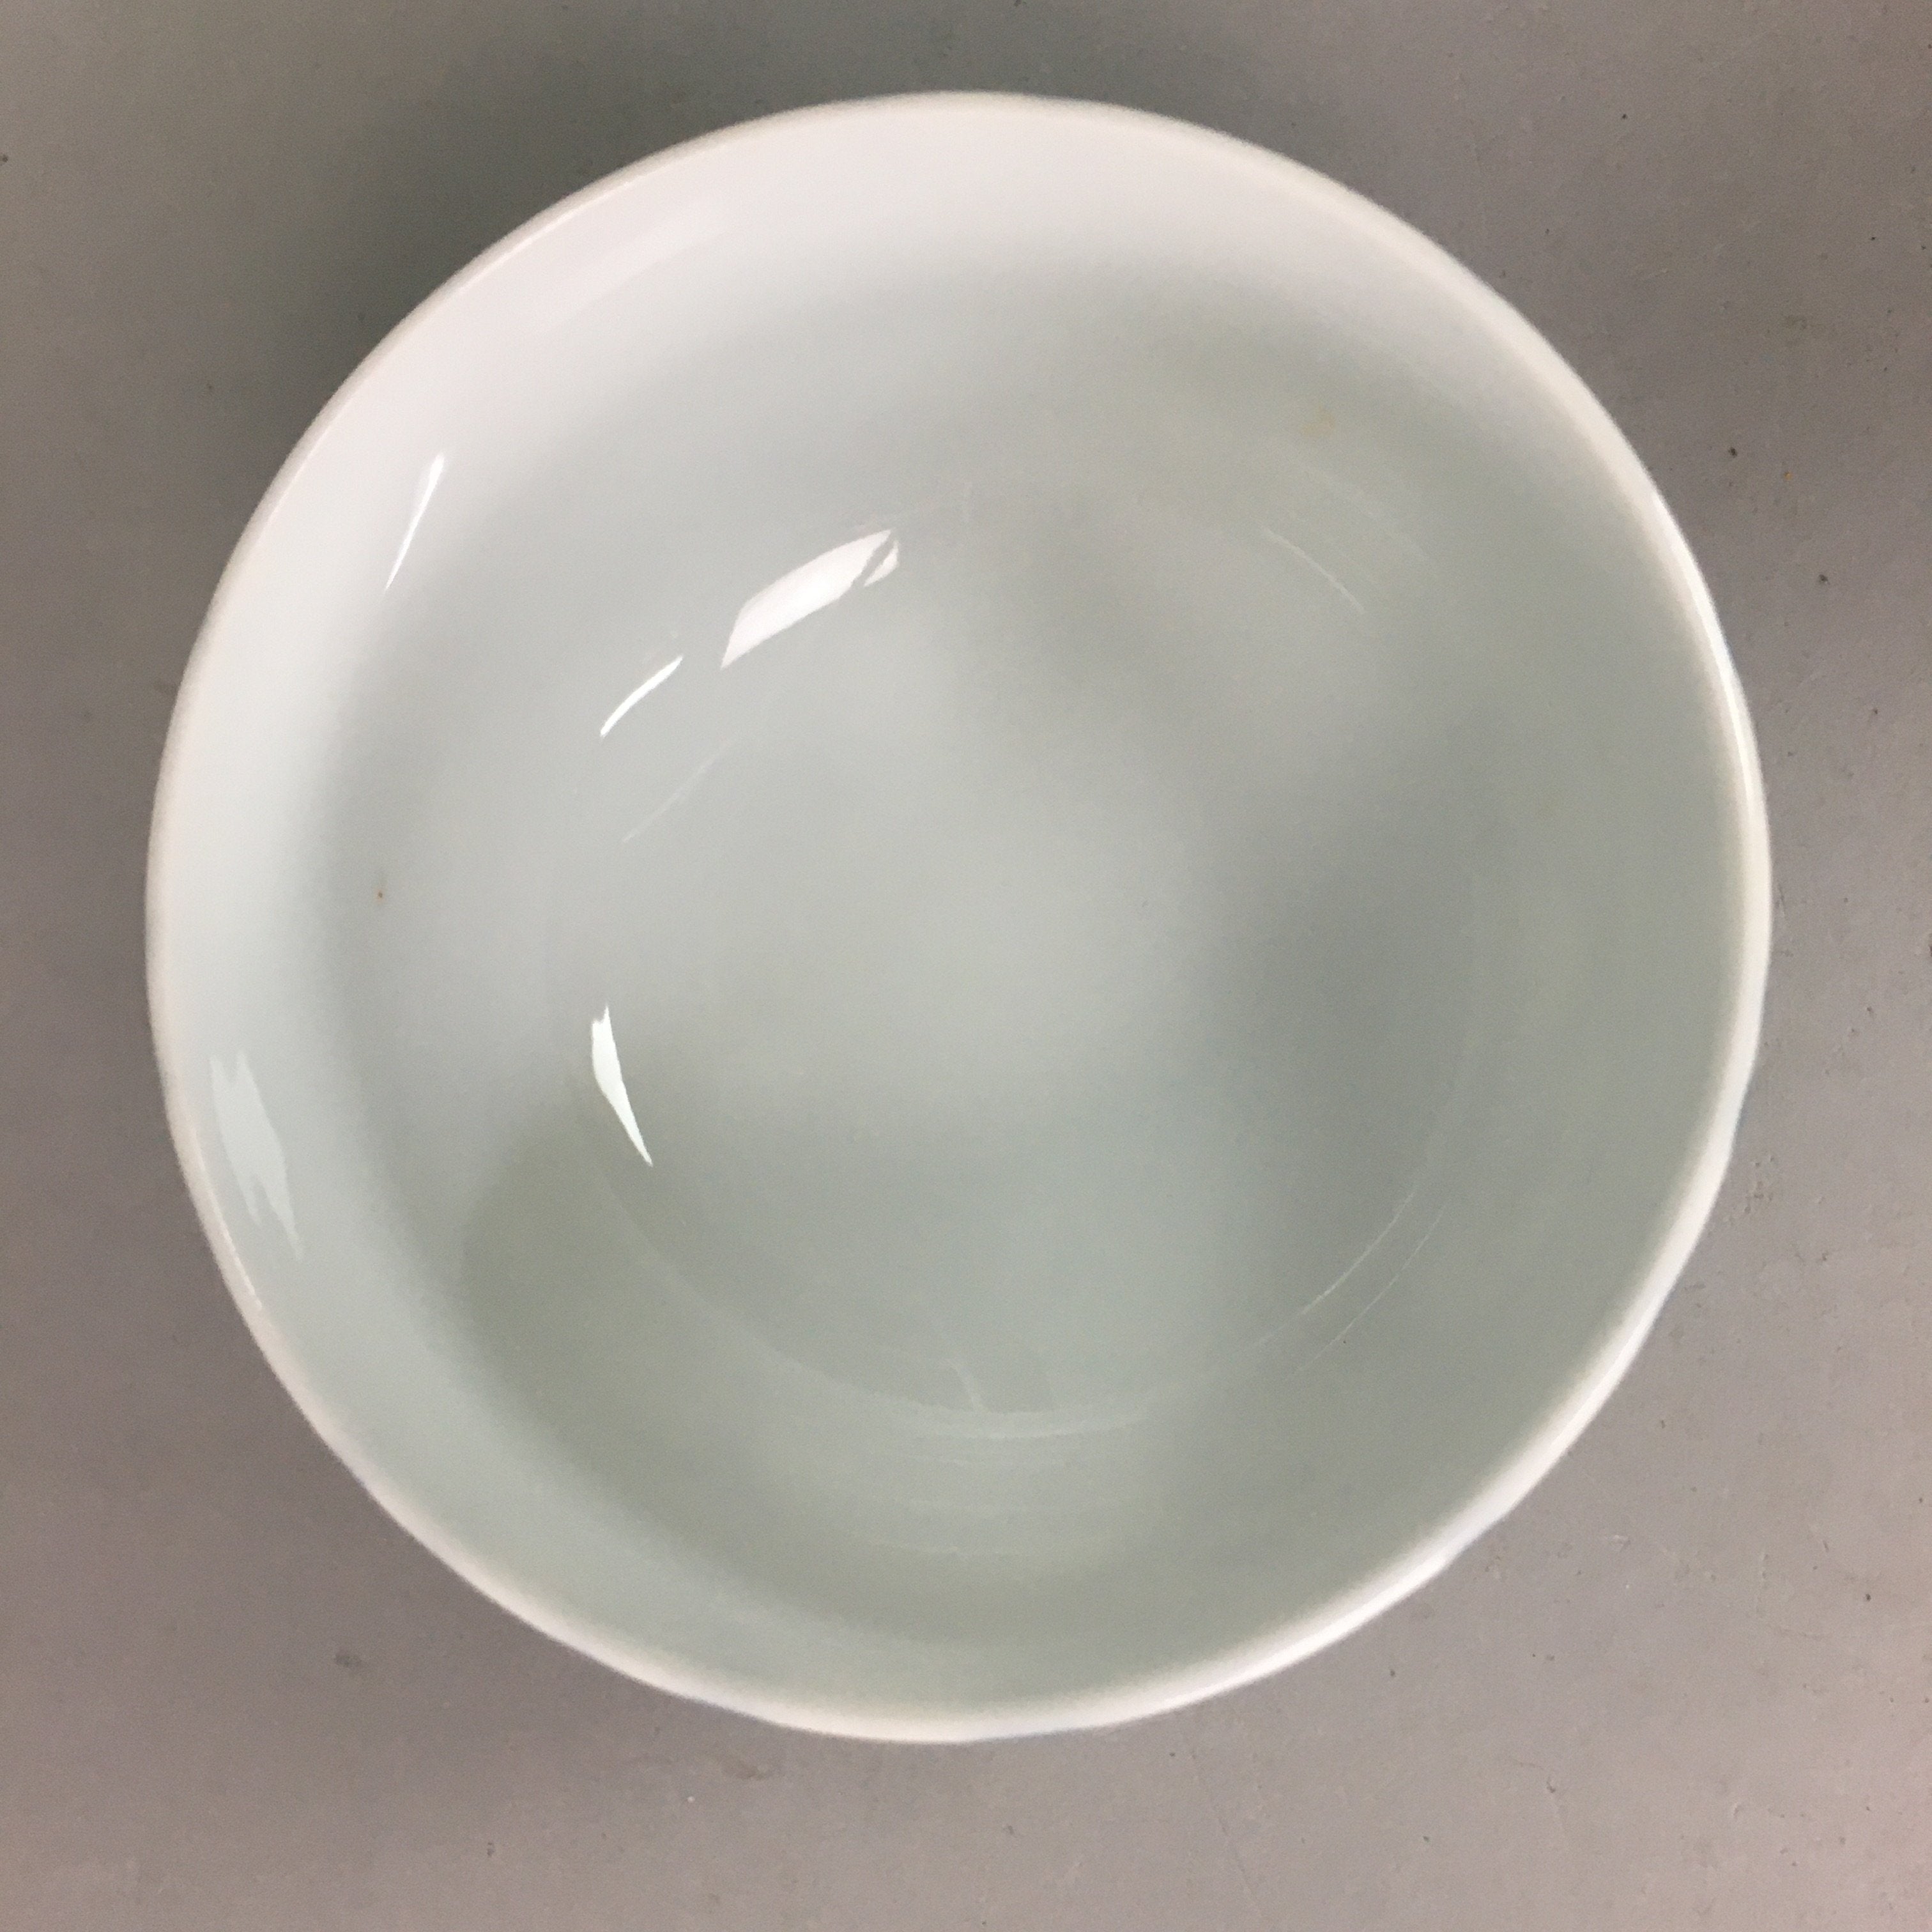 Japanese Porcelain Lidded Teacup Vtg Yunomi Arabesque Blue White Sometsuke QT79